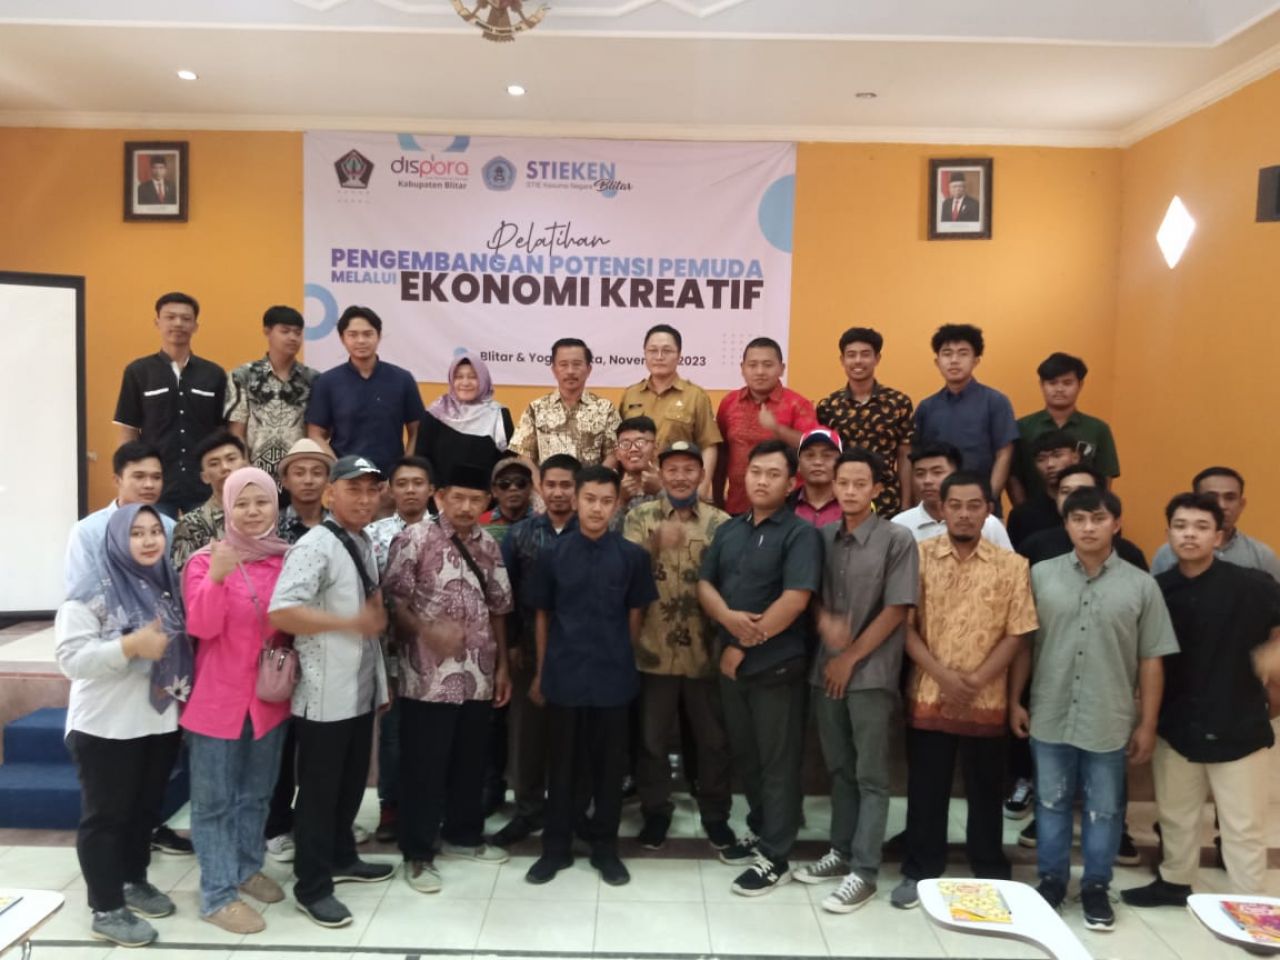 Pelatihan pengembangan potensi pemuda melalui ekonomi kreatif yang diselenggarakan Dinas Kepemudaan dan Olah Raga Kabupaten Blitar di Gedung Stieken Kota Blitar, Senin (20/11/2023).